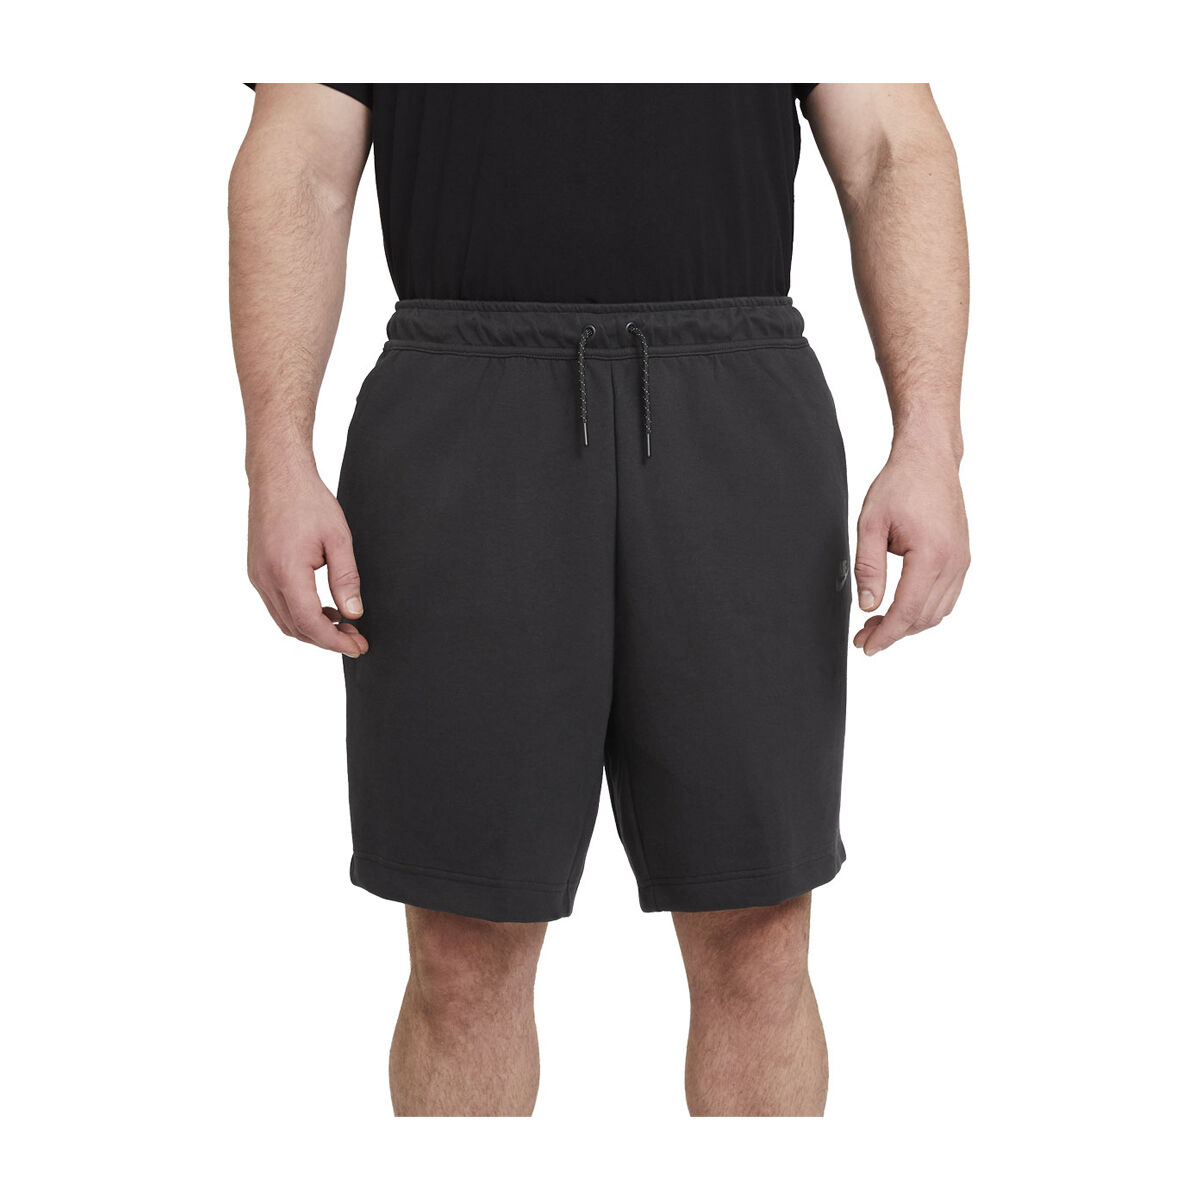 nike tech shorts sale